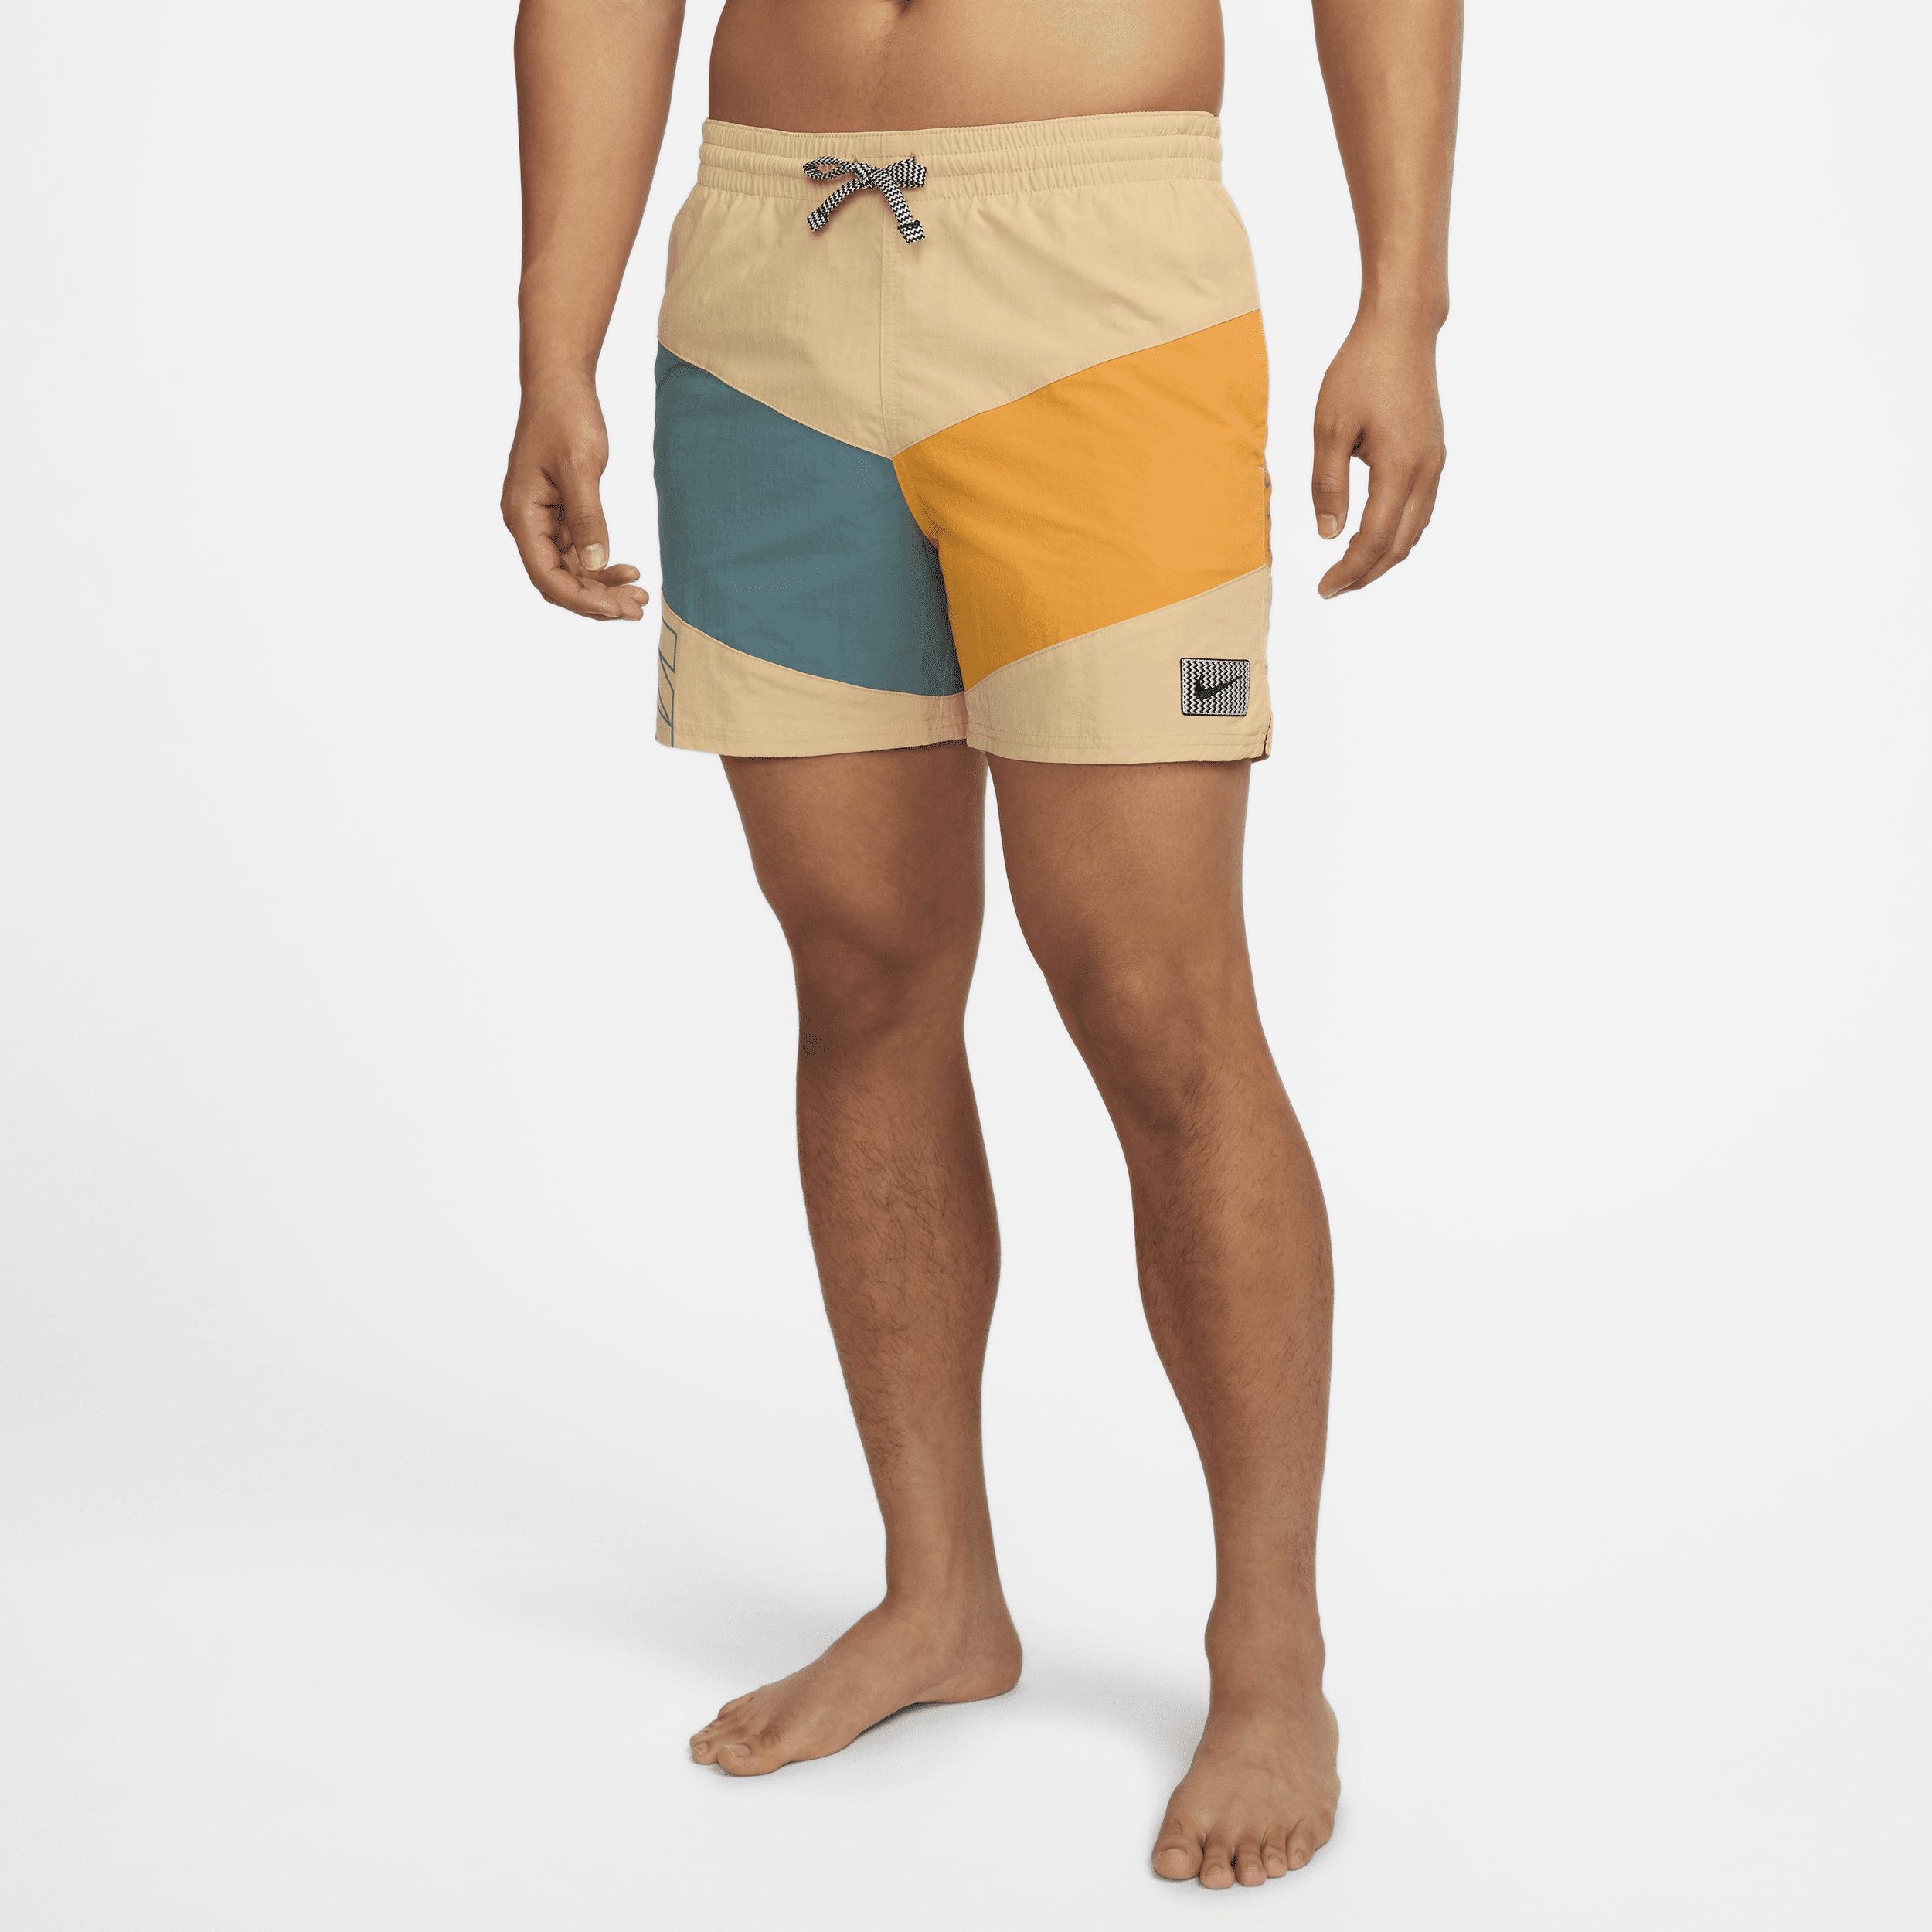 Shorts da mare Volley Nike 13 cm – Uomo - Marrone